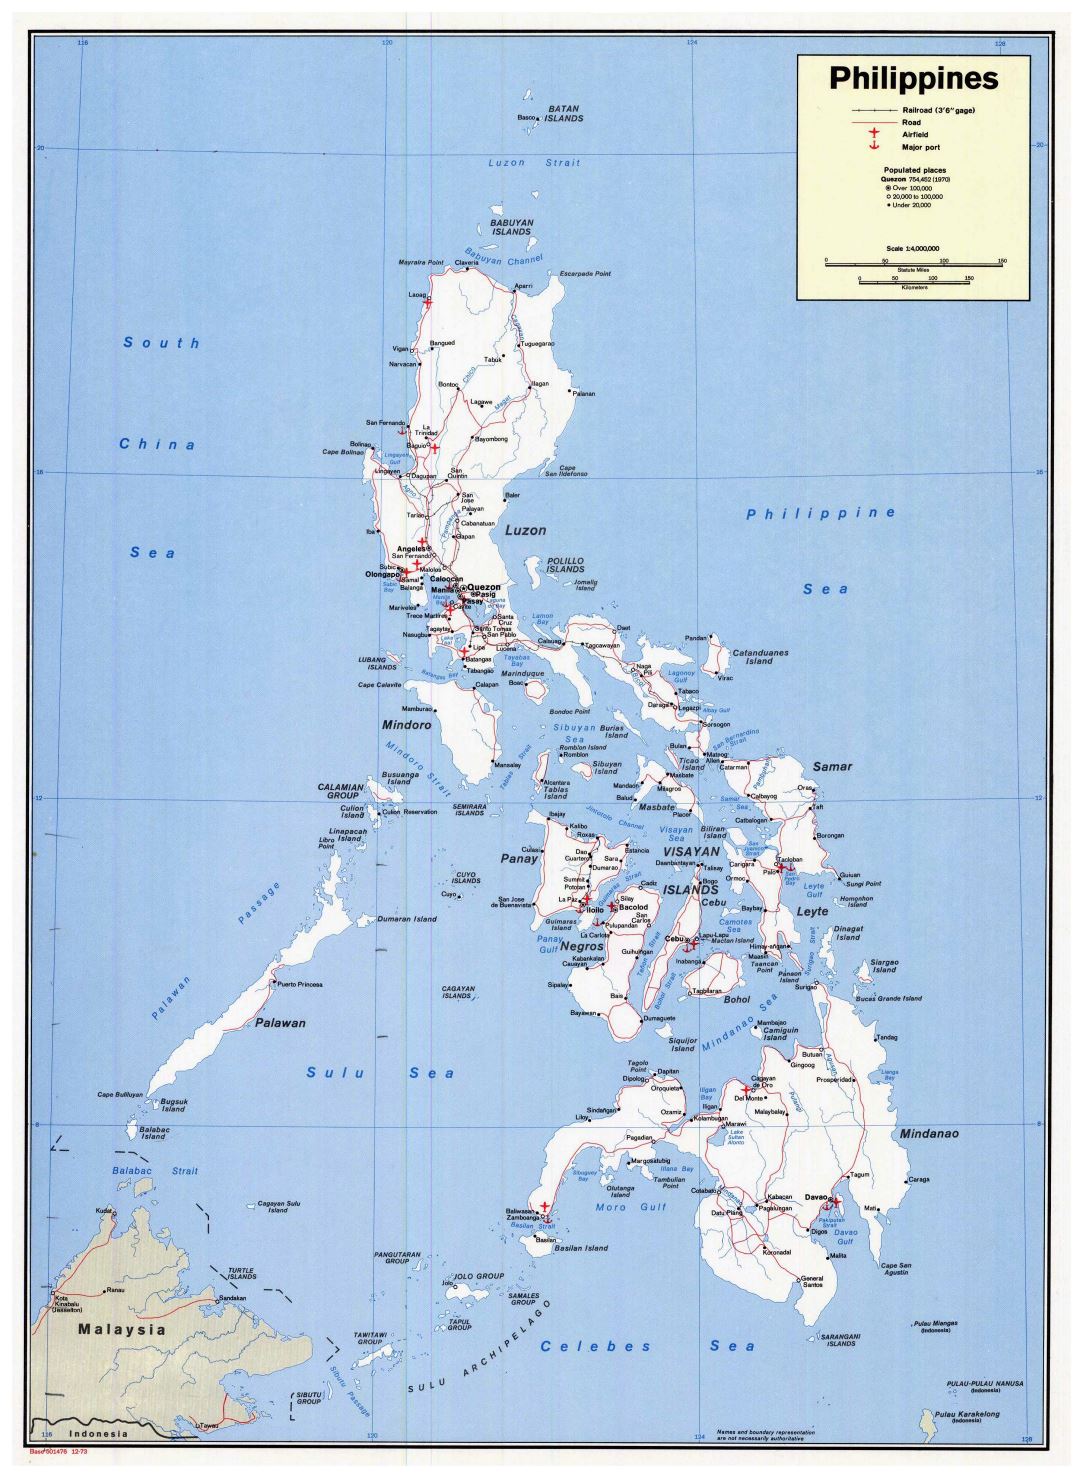 Большая детальная политическая карта Филиппин с дорогами, городами, морскими портами и аэропортами - 1973